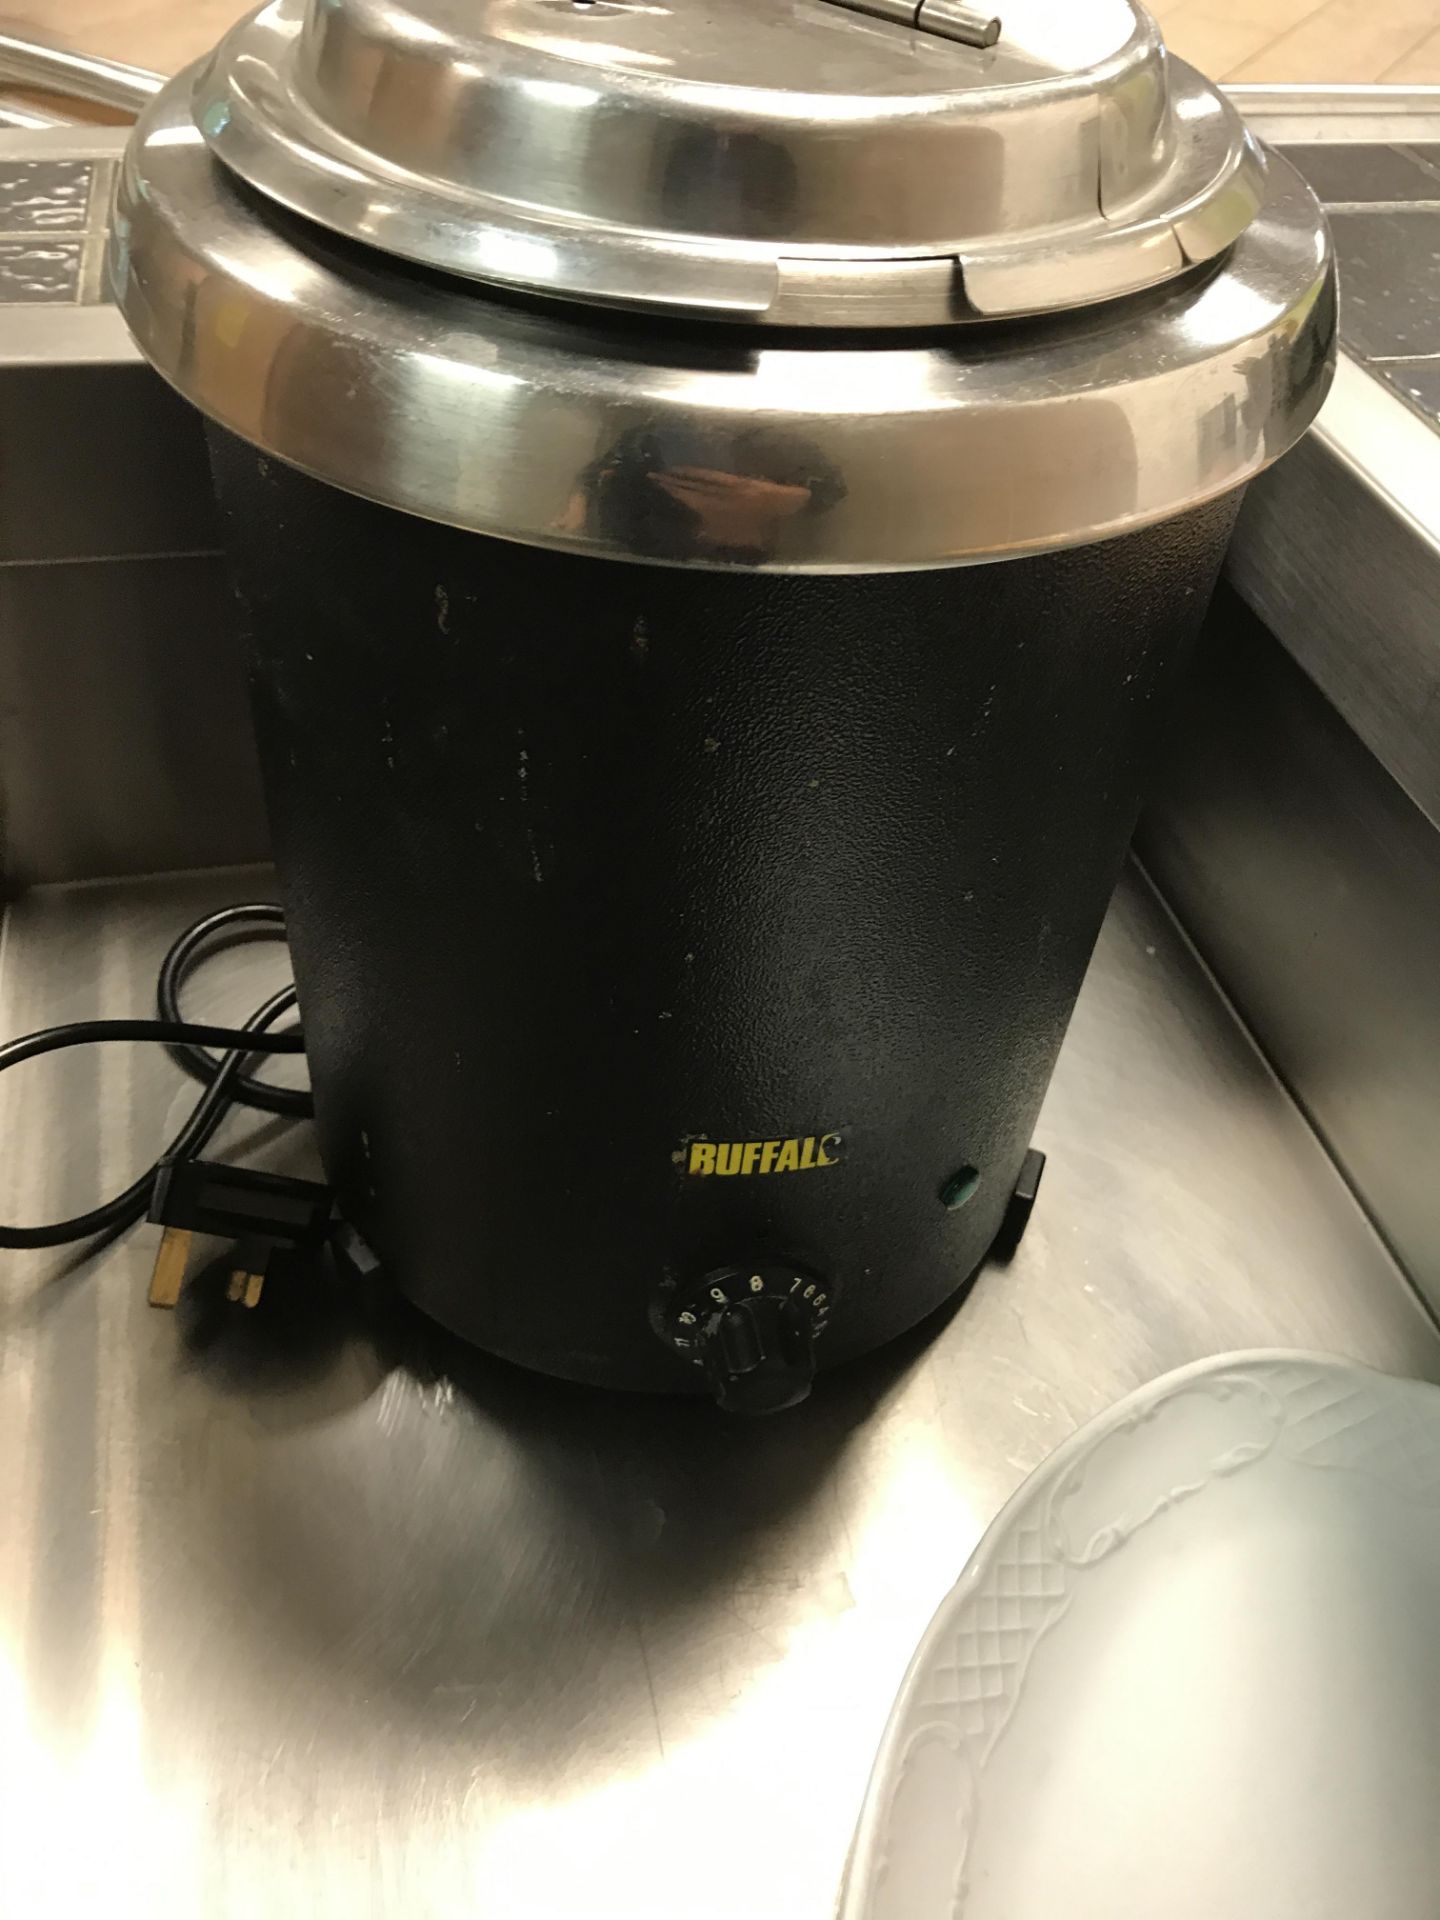 Buffalo soup kettle